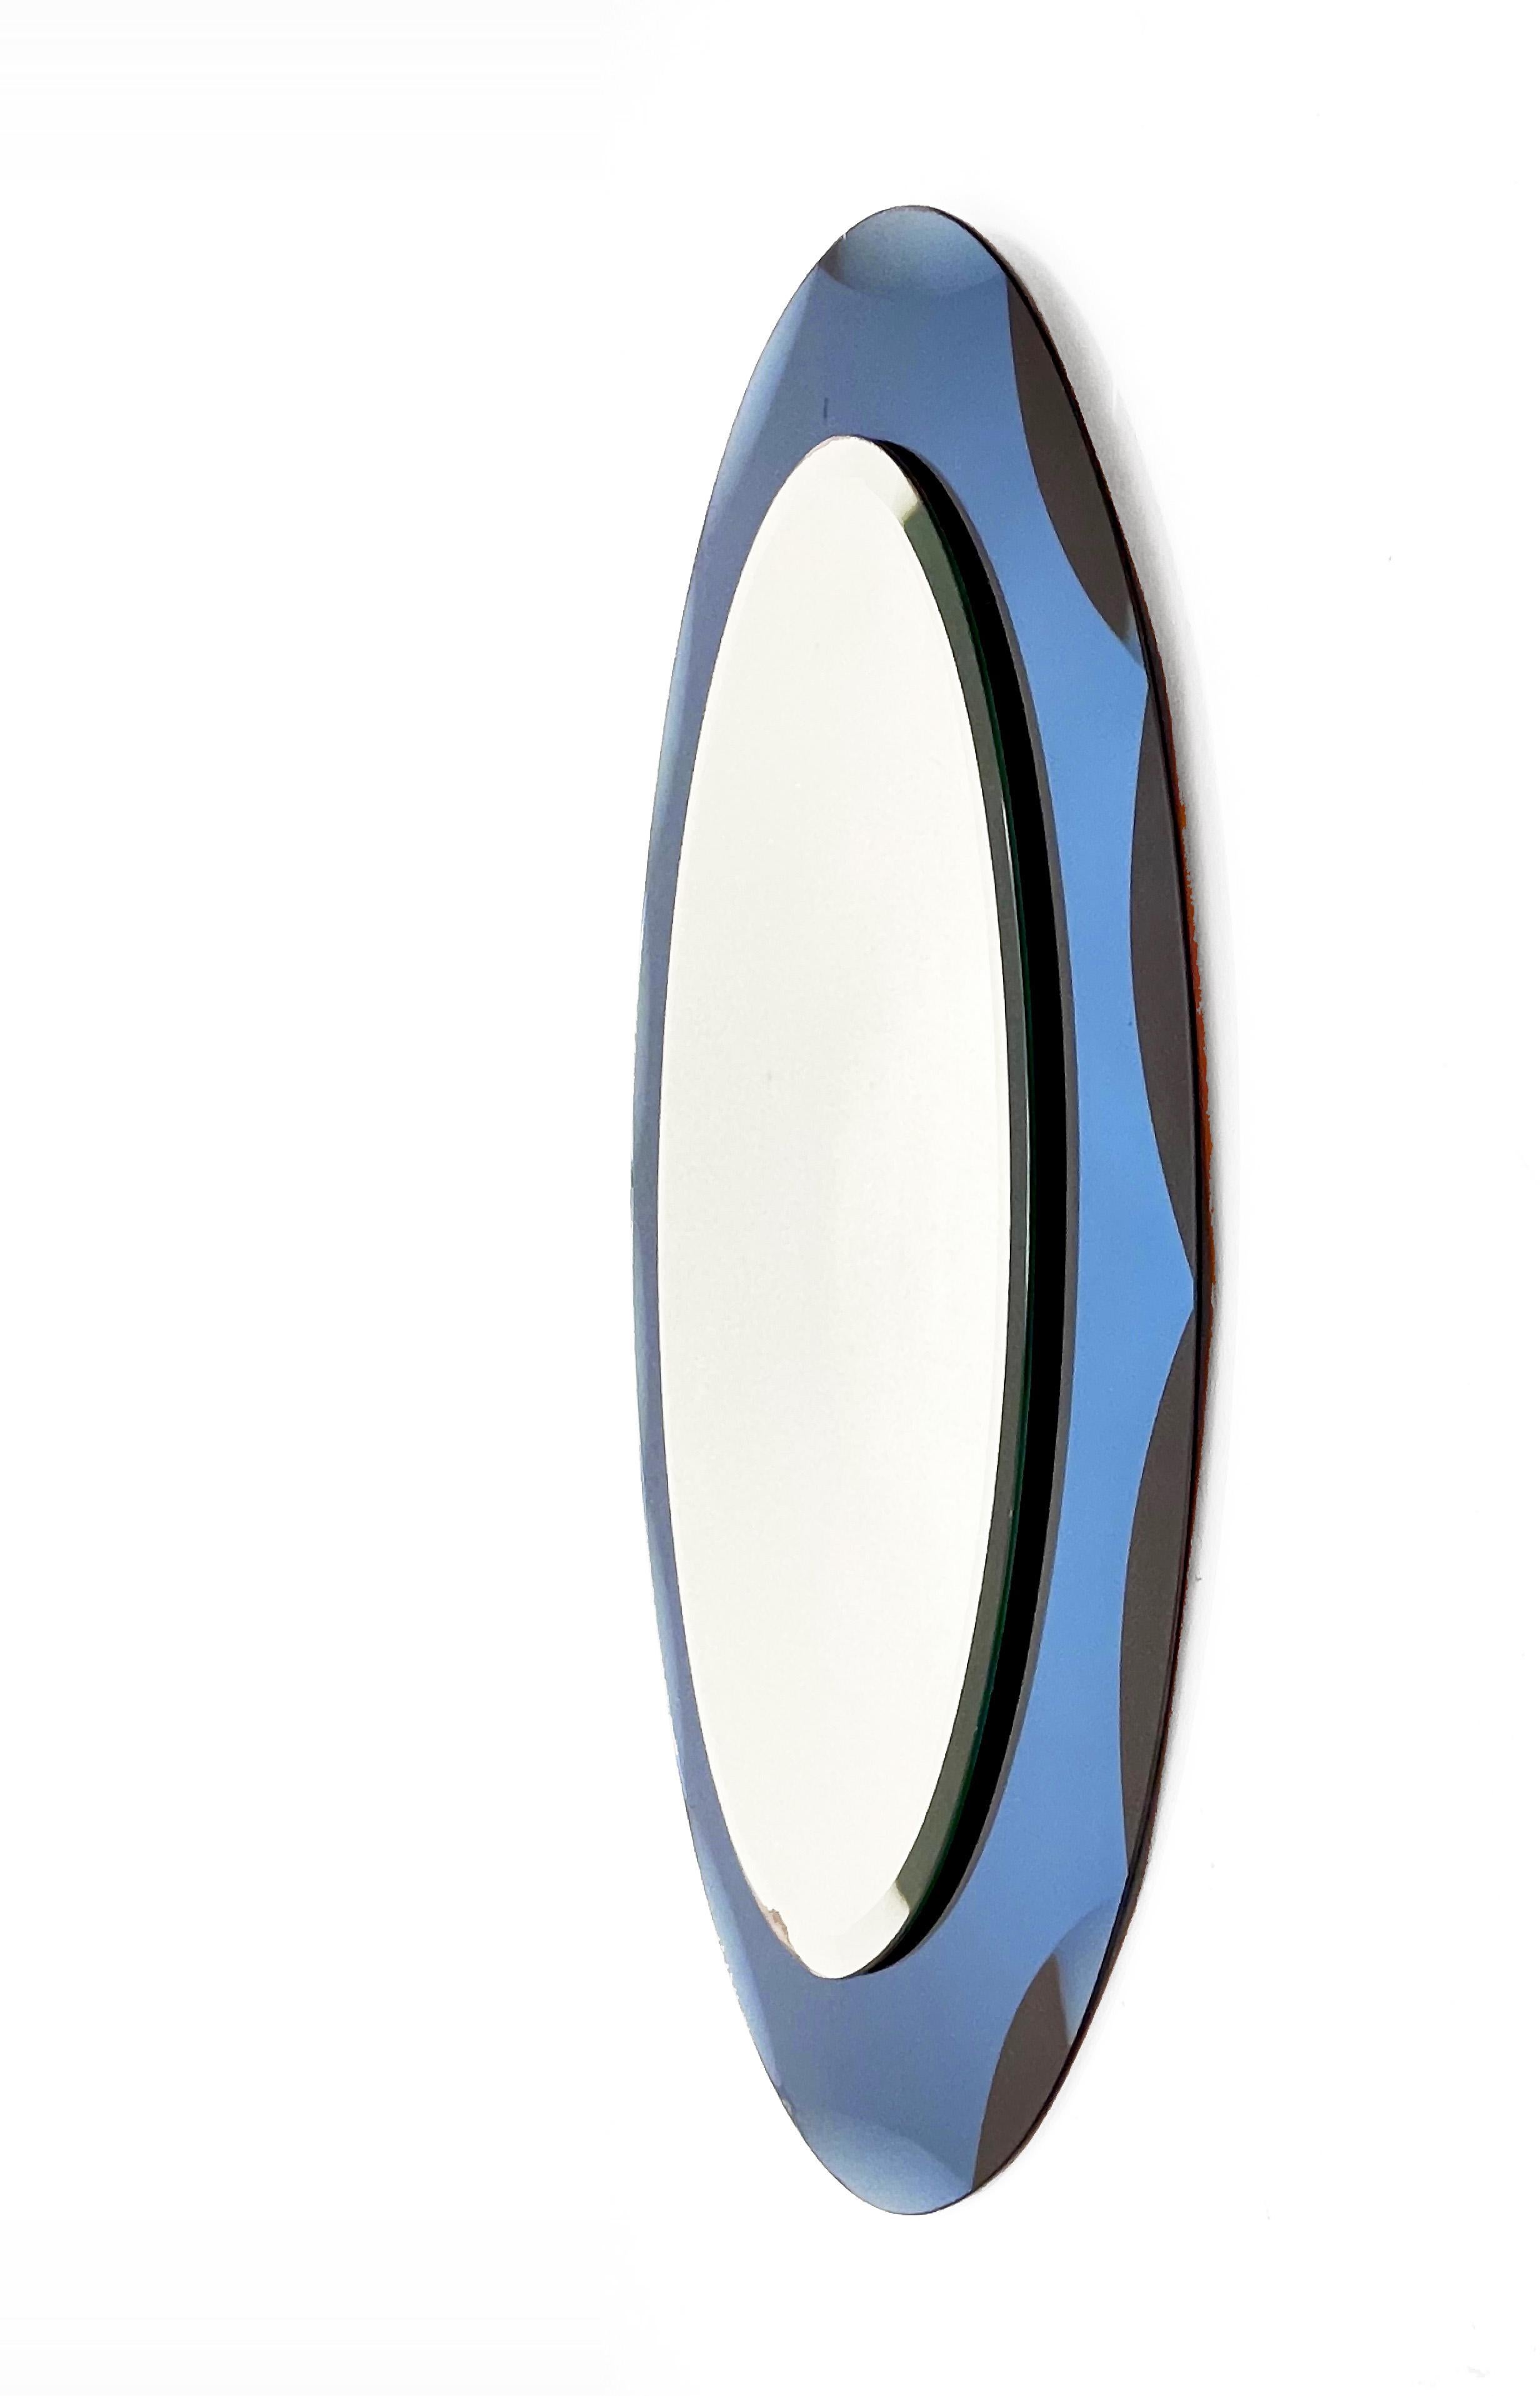 Magnifique miroir ovale du milieu du siècle avec un cadre bleu gravé. Ce miroir italien est dans le style de Cristal Arte et a été conçu en Italie dans les années 1960.

Cette pièce est un exemple d'excellente fabrication italienne avec une double